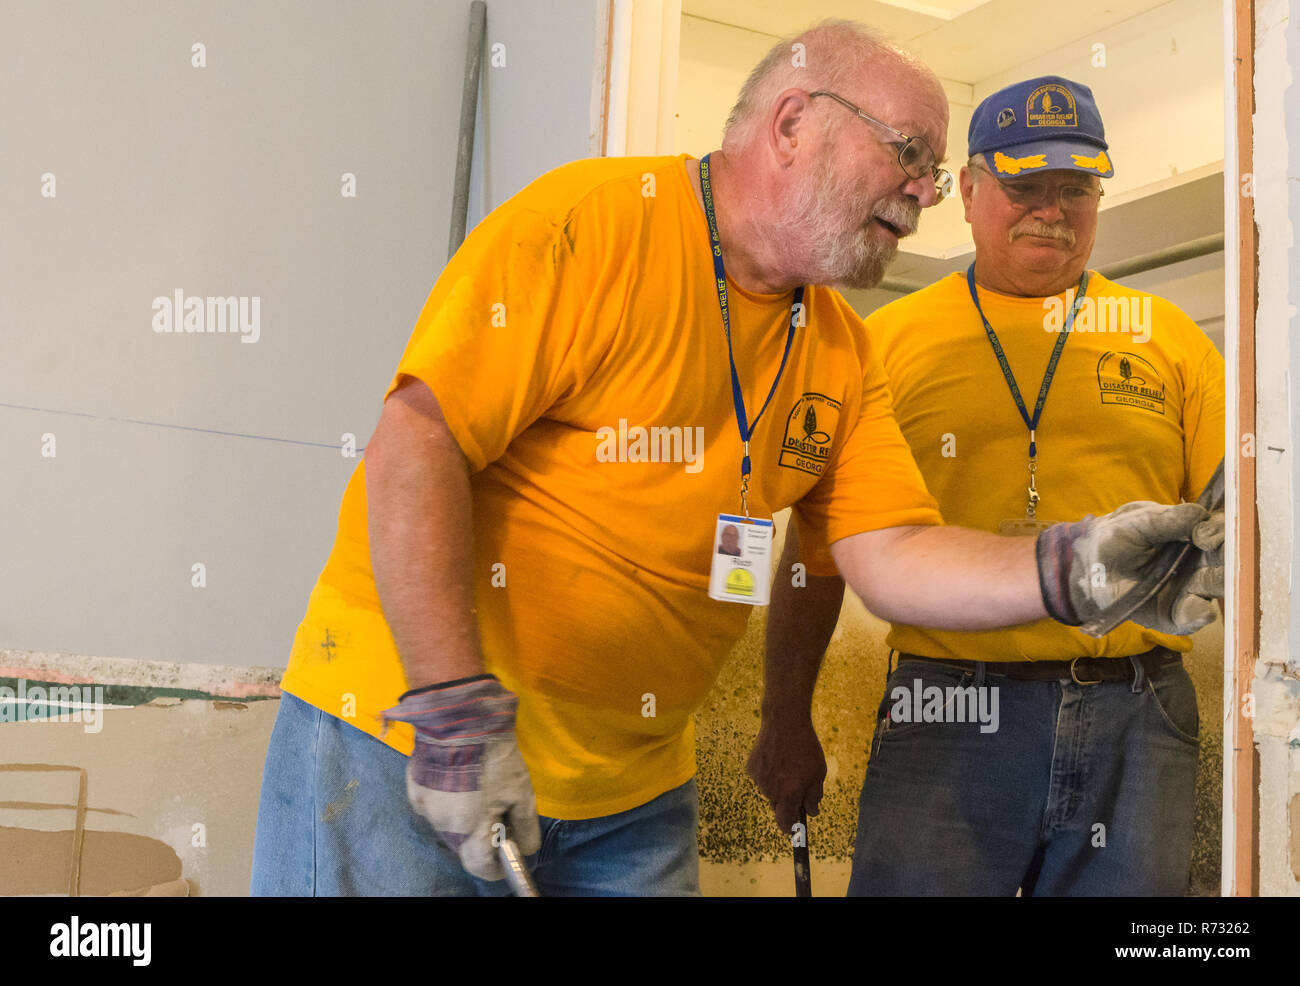 Southern Baptist Katastrophenhilfe Freiwillige, einen beschädigten Tür Rahmen aus einem überfluteten Haus entfernen, nachdem eine Überschwemmung in Baton Rouge, Louisiana. Stockfoto